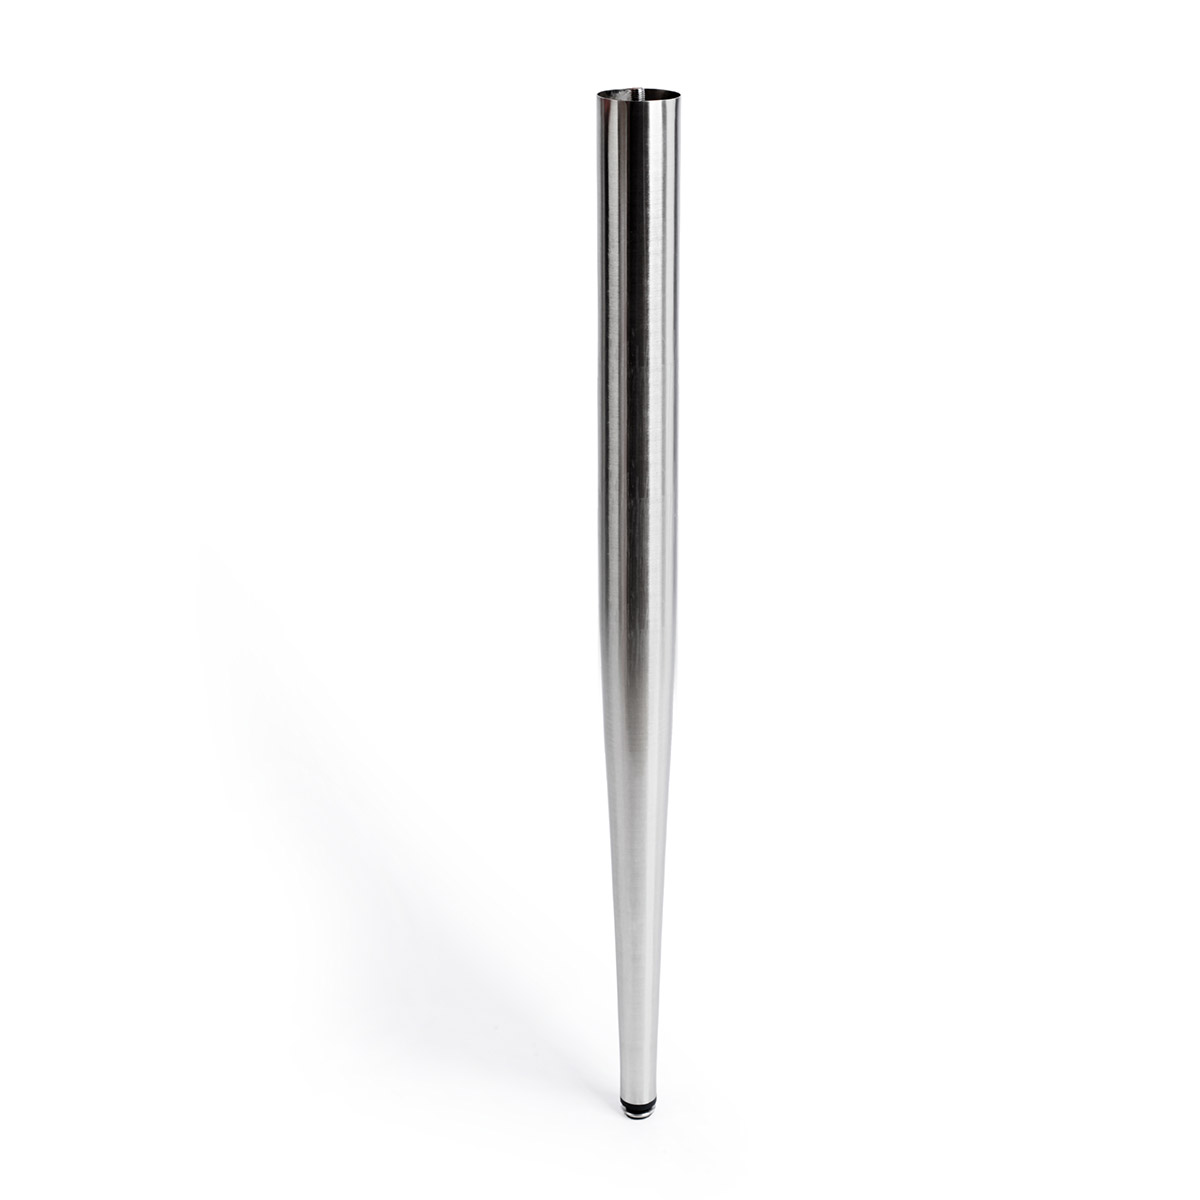 Pata de acero cilíndrica con una altura de 860 mm y acabada en aluminio. Dimensiones: 60x60x860 mm